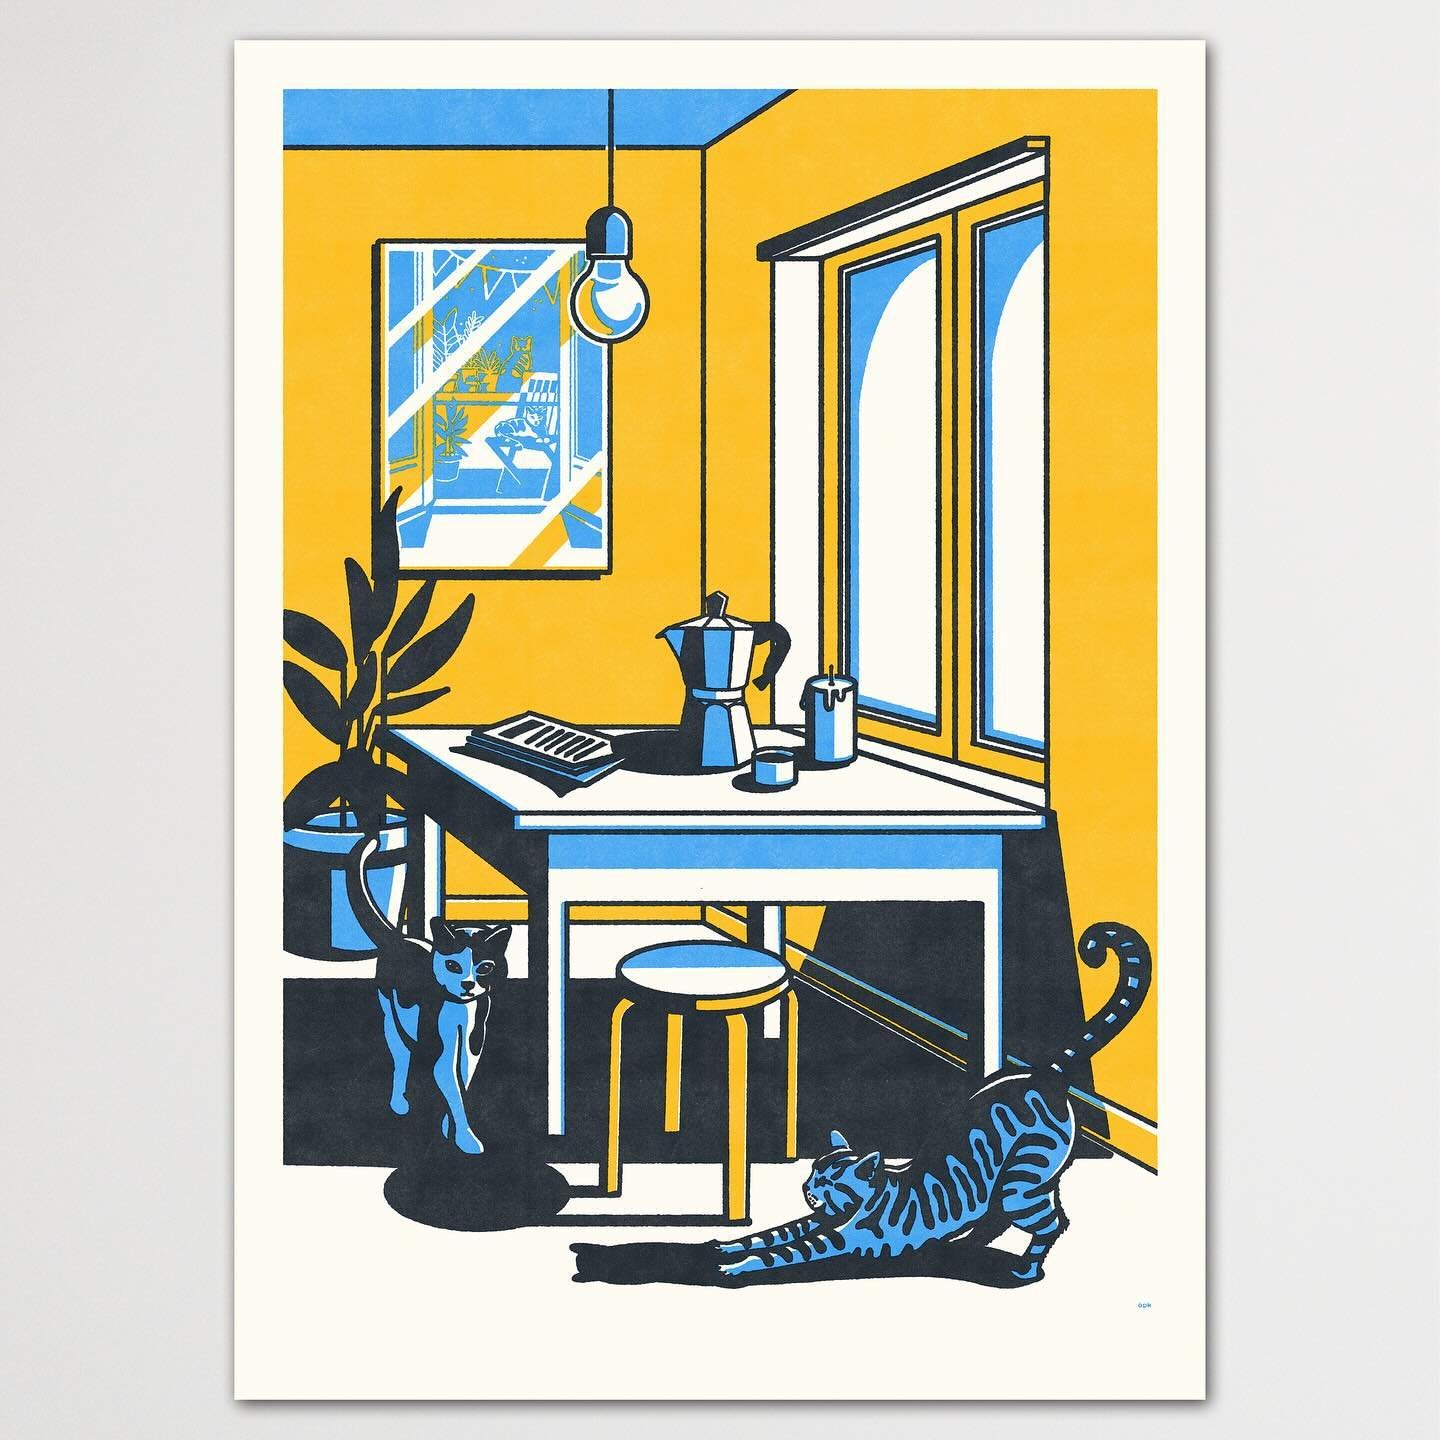 neuer print #moudi in unserem shop.opak.cc

siebdruck plakat mit 3 farben gedruckt

#print #shopak #catstagram #cats_of_world #catart #printshop #moudi #kater #stillerhas #illustratorenschweiz #animalprint #siebdruck #work #siebdruckatelier #graphicd